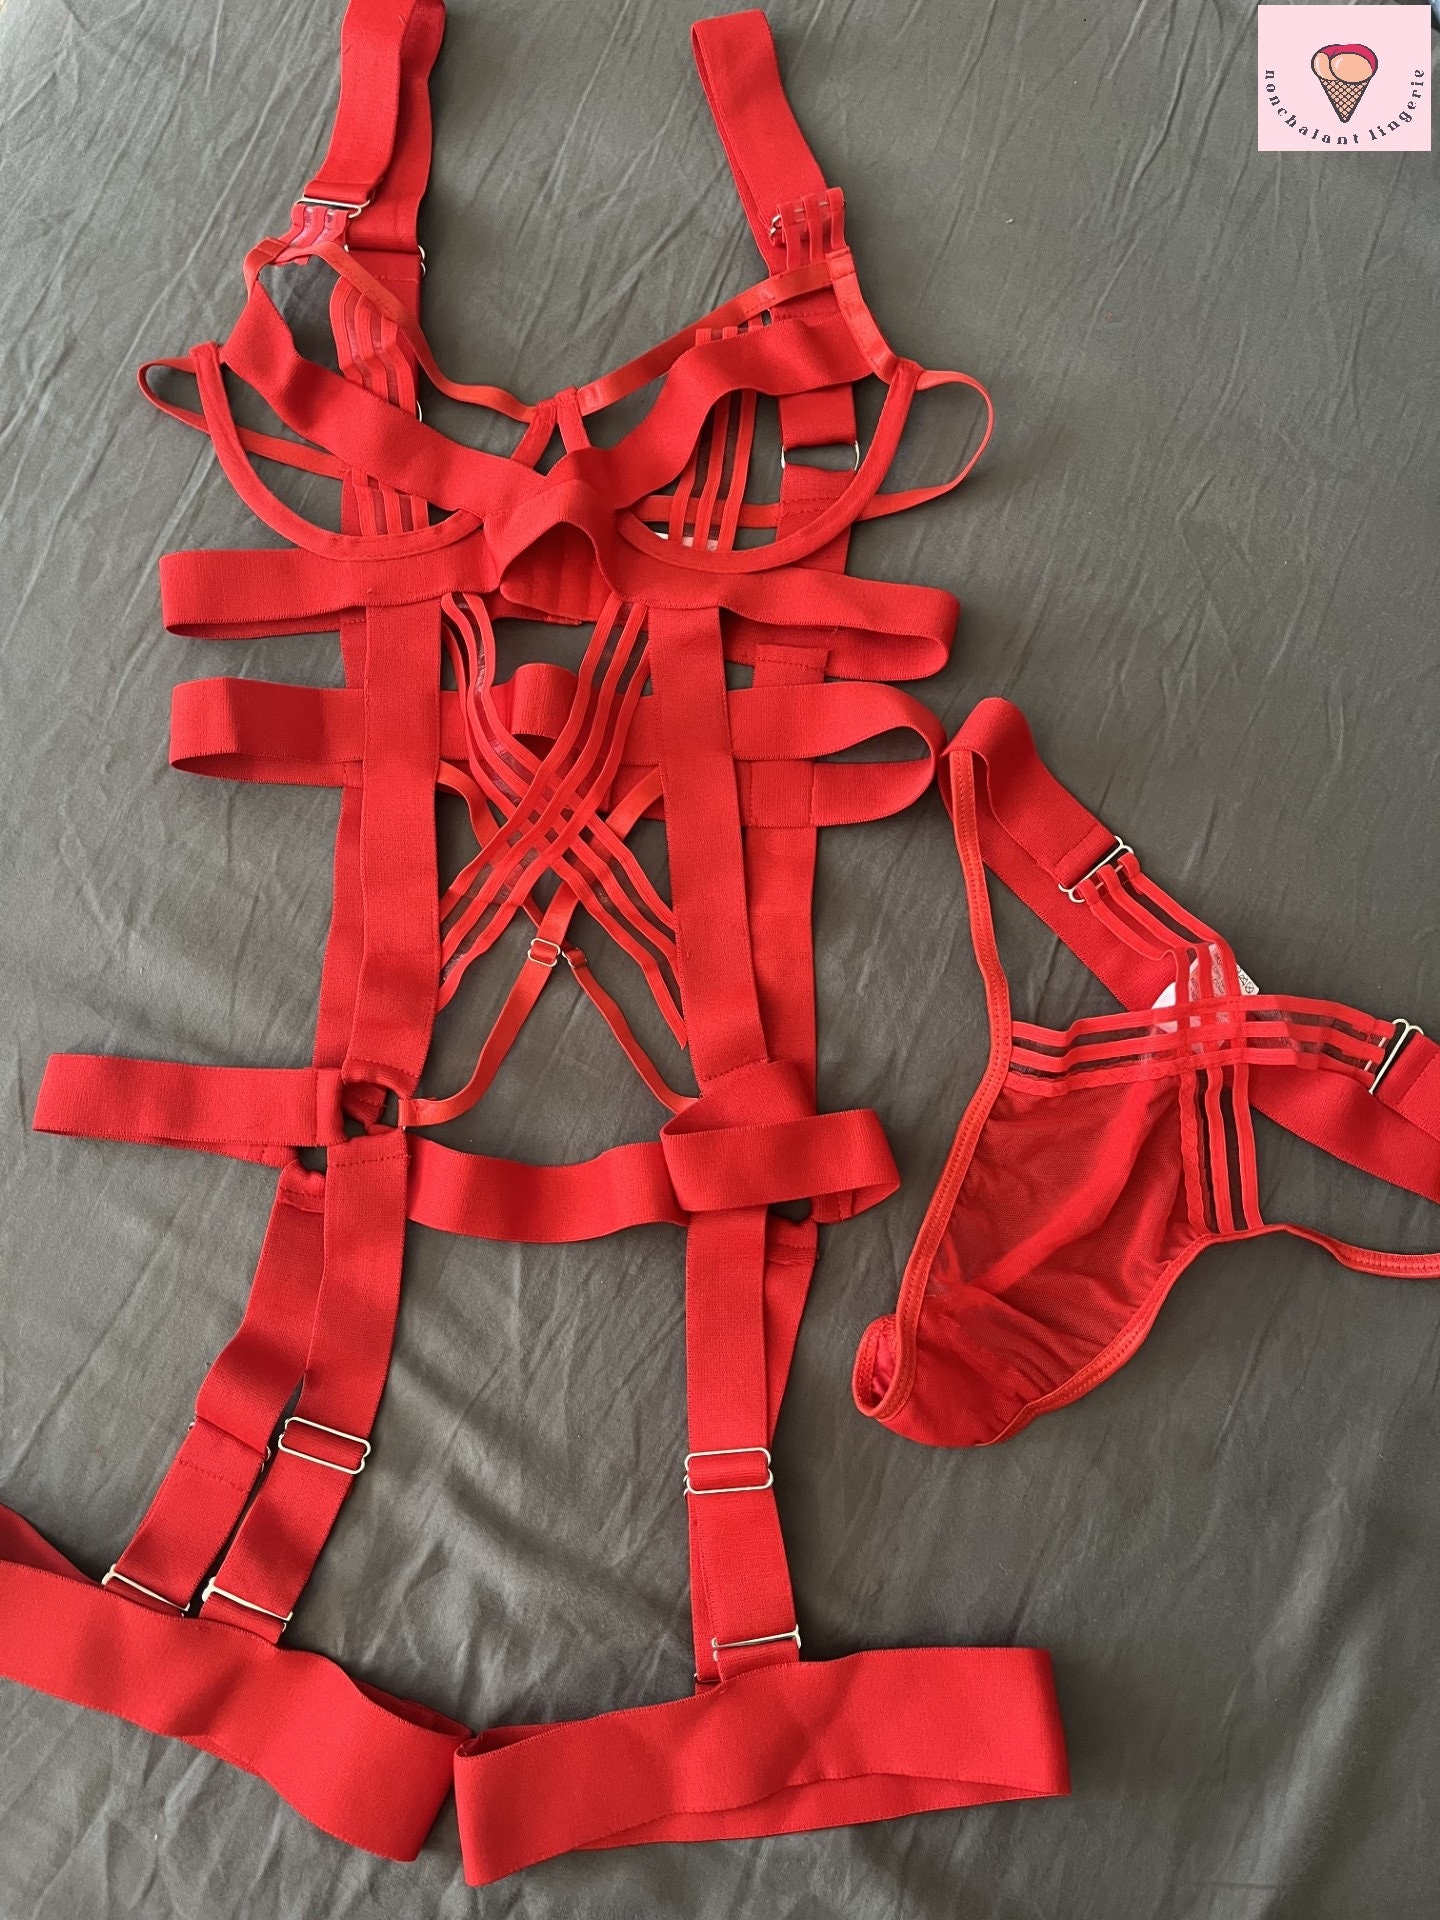 Plus Size Fire Love 2 piece Mesh lingerie set - Red